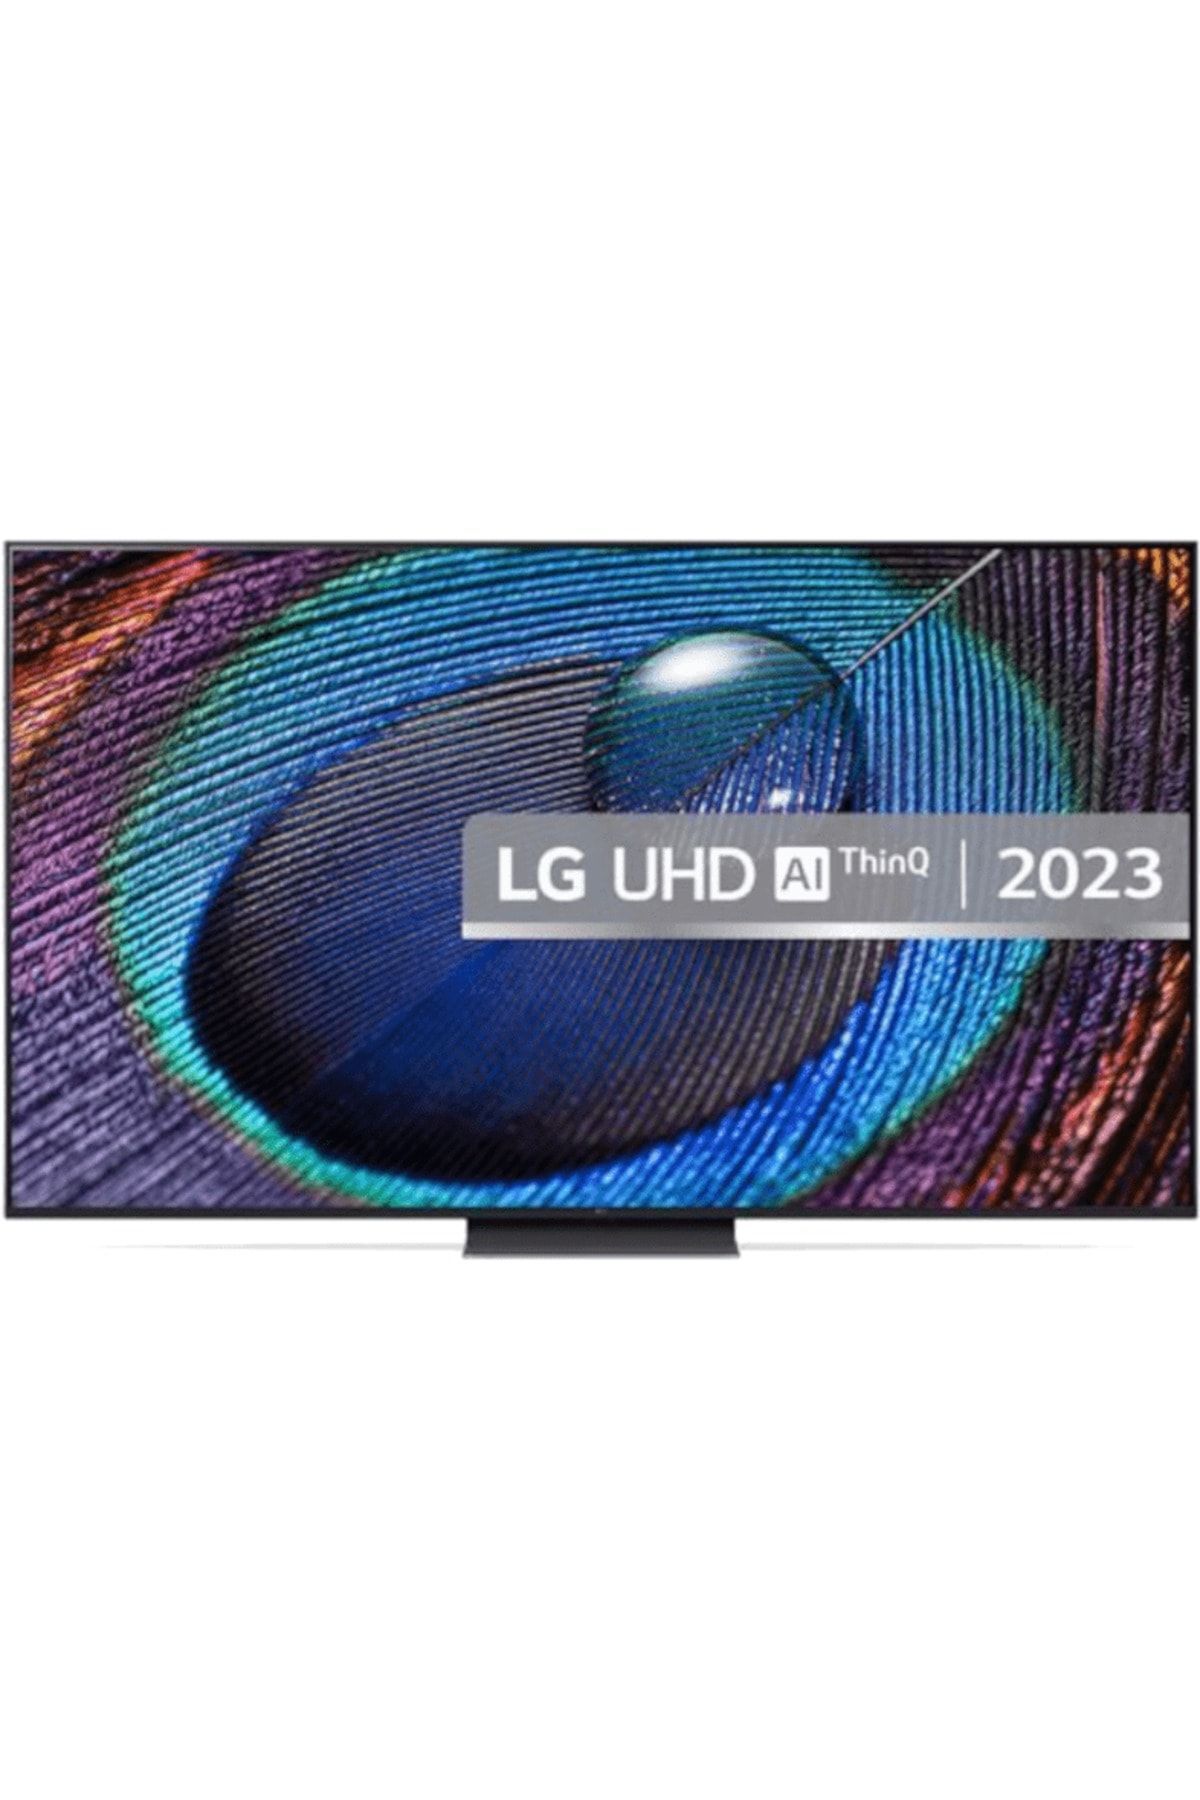 LG 75UR91006 75" 190 Ekran Uydu Alıcılı 4K Ultra HD Smart LED TV